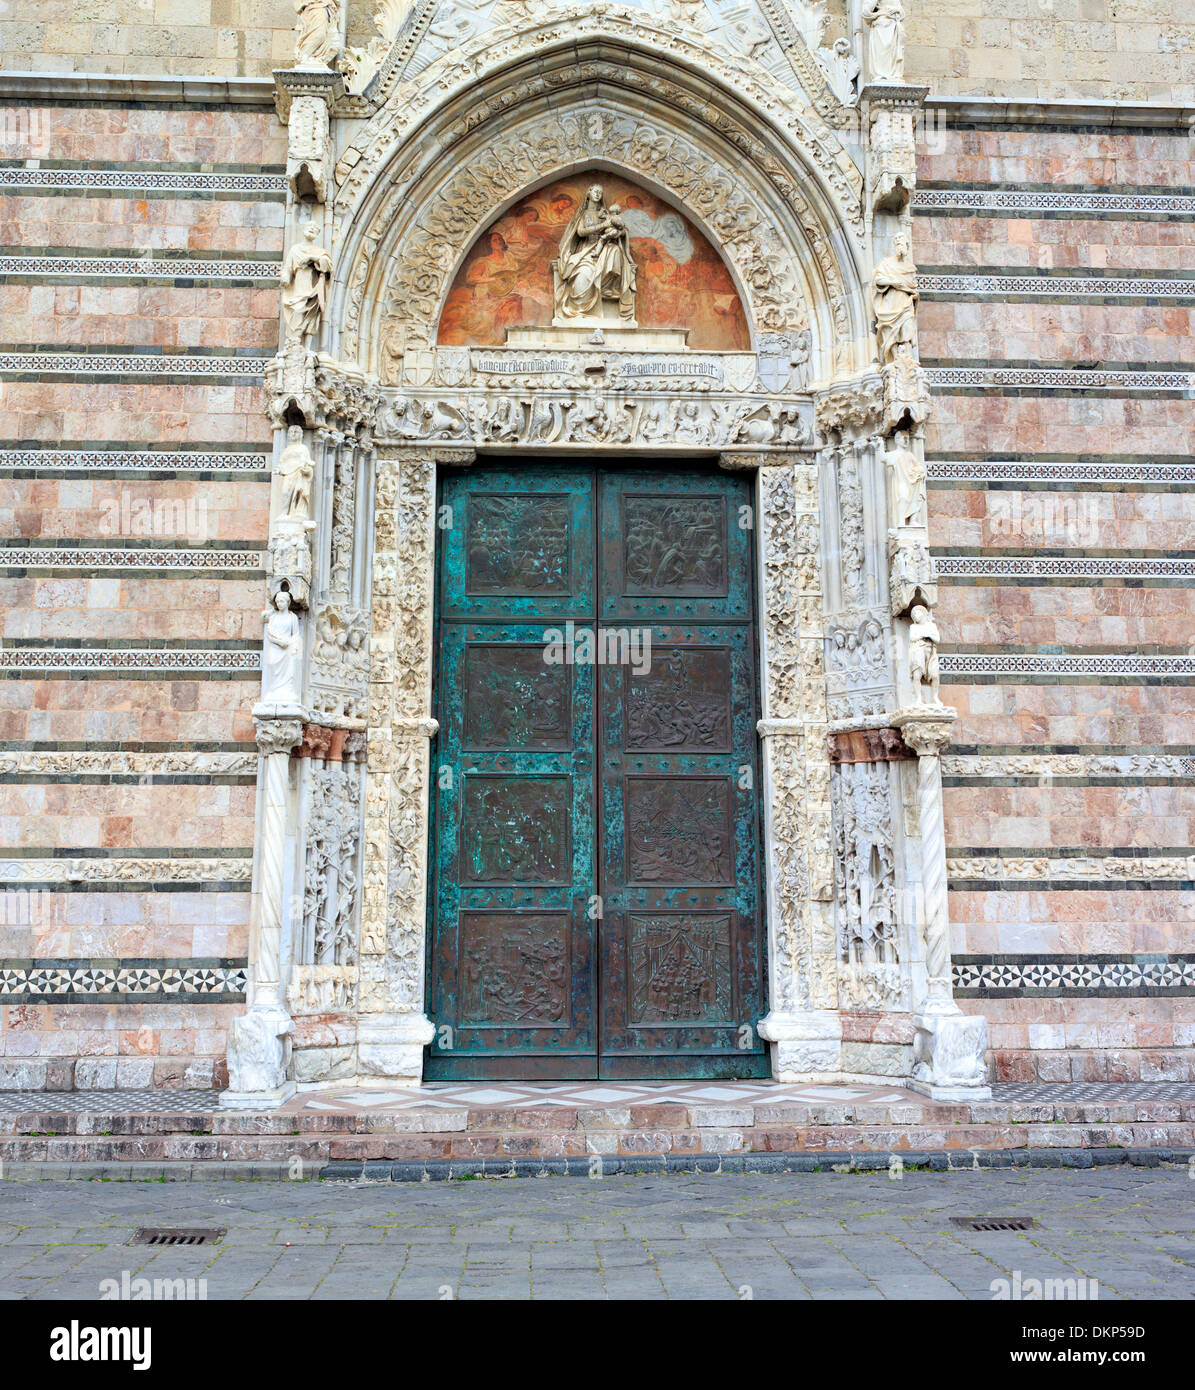 Portal der Kathedrale von Messina, Messina, Sizilien, Italien Stockfoto